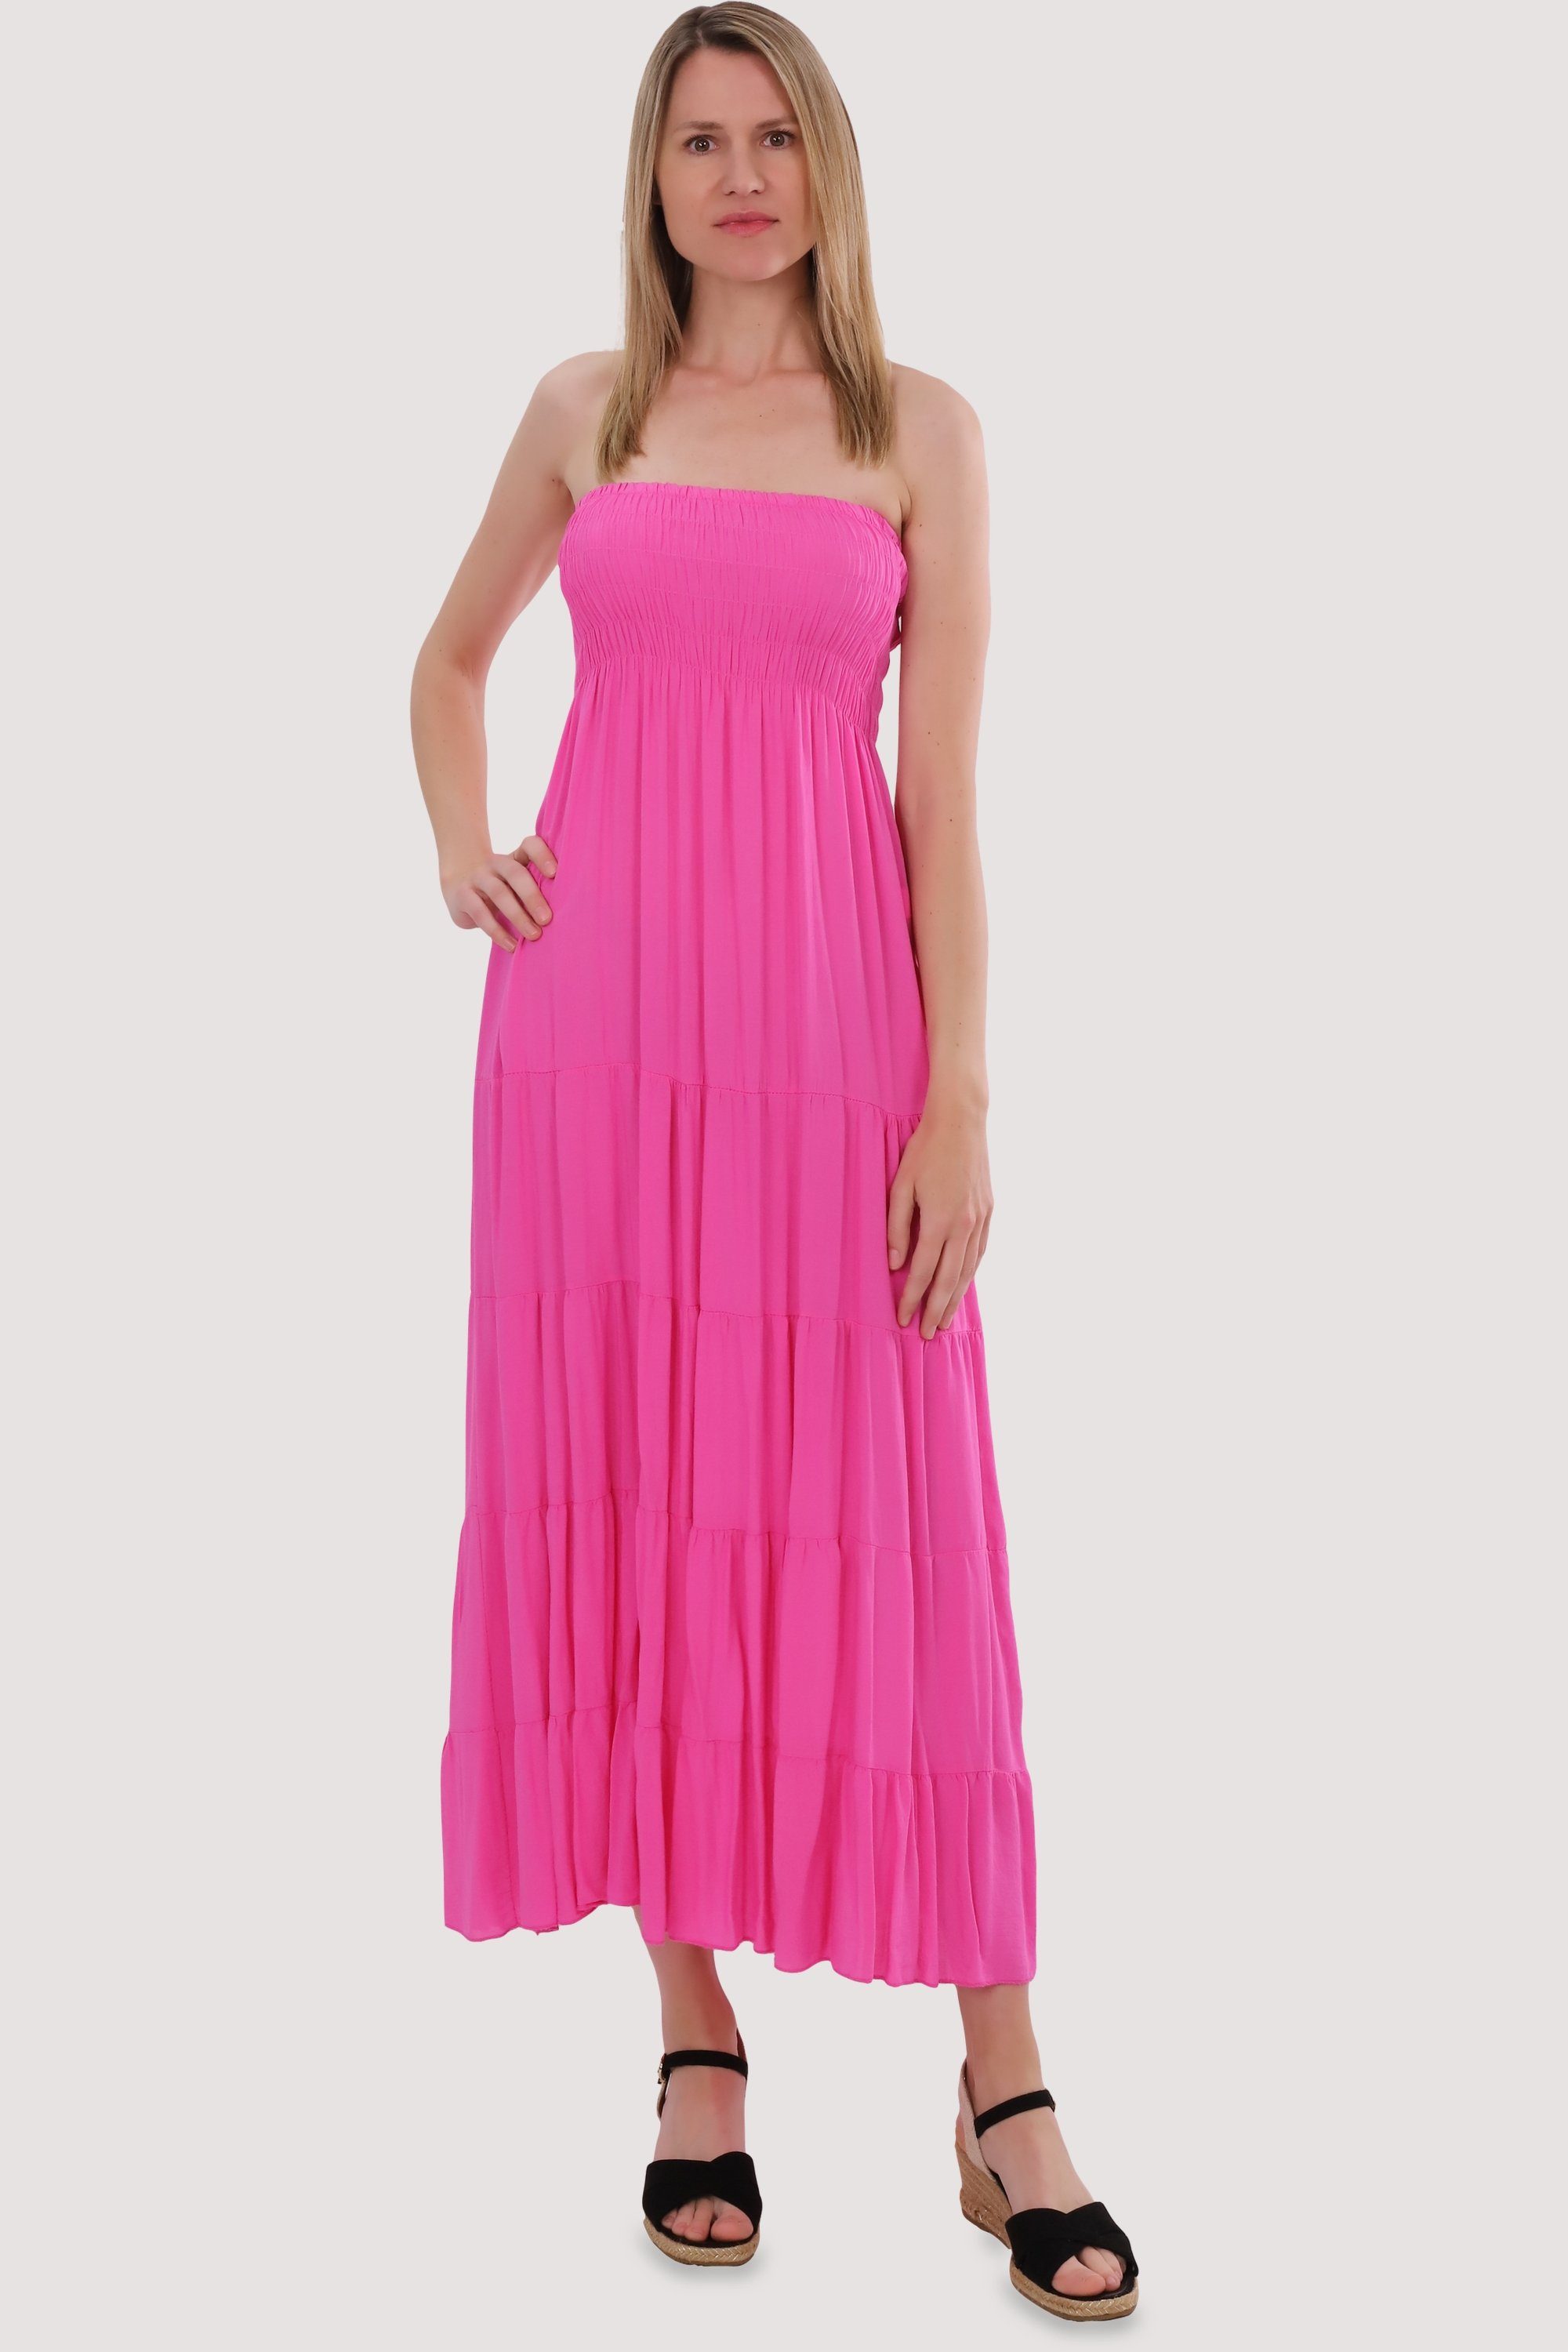 malito figurumspielendes more Sommerkleid rosa Einheitsgröße Strandkleid 4635 Bandeaukleid fashion than